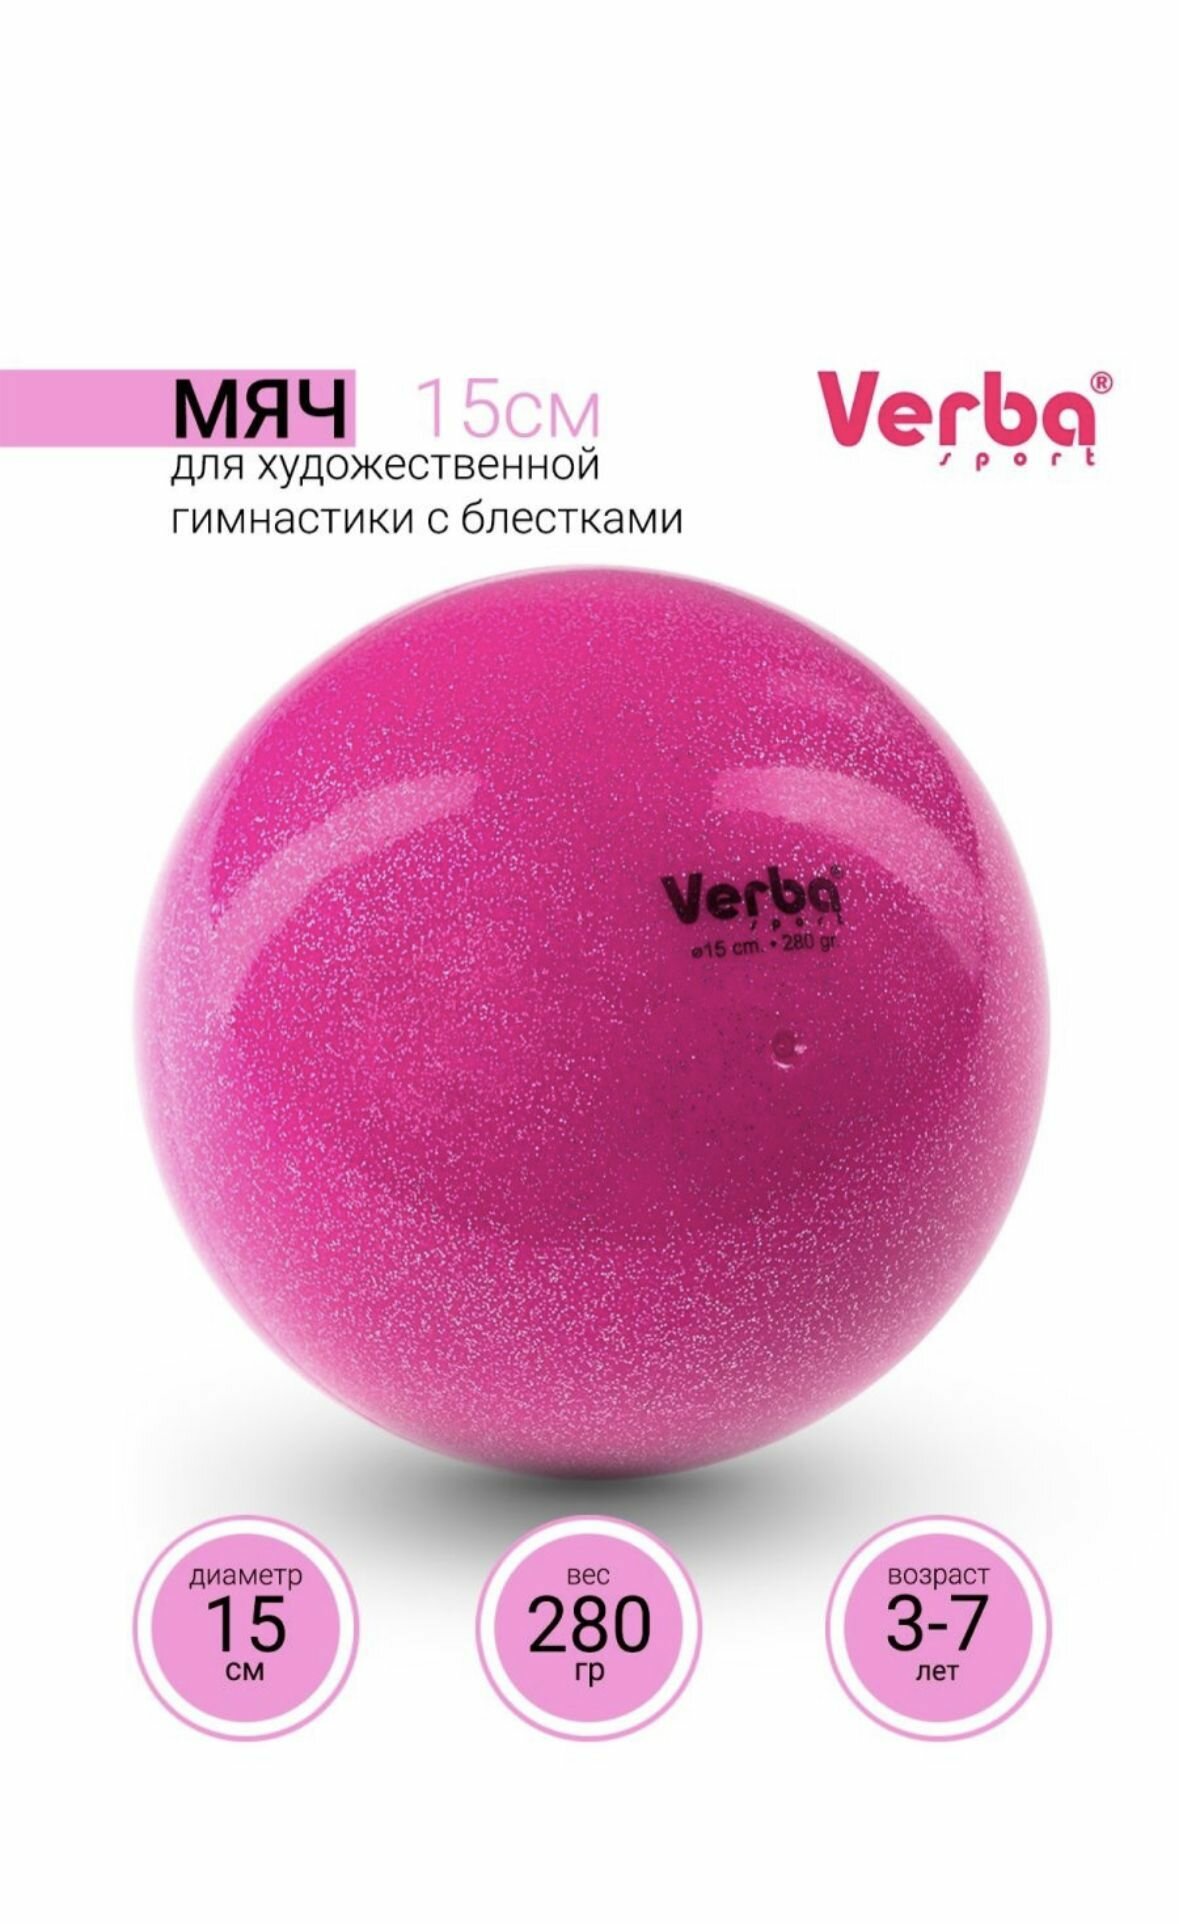 Мяч для художественной гимнастики 15см. Verba Sport с блестками розовый неон